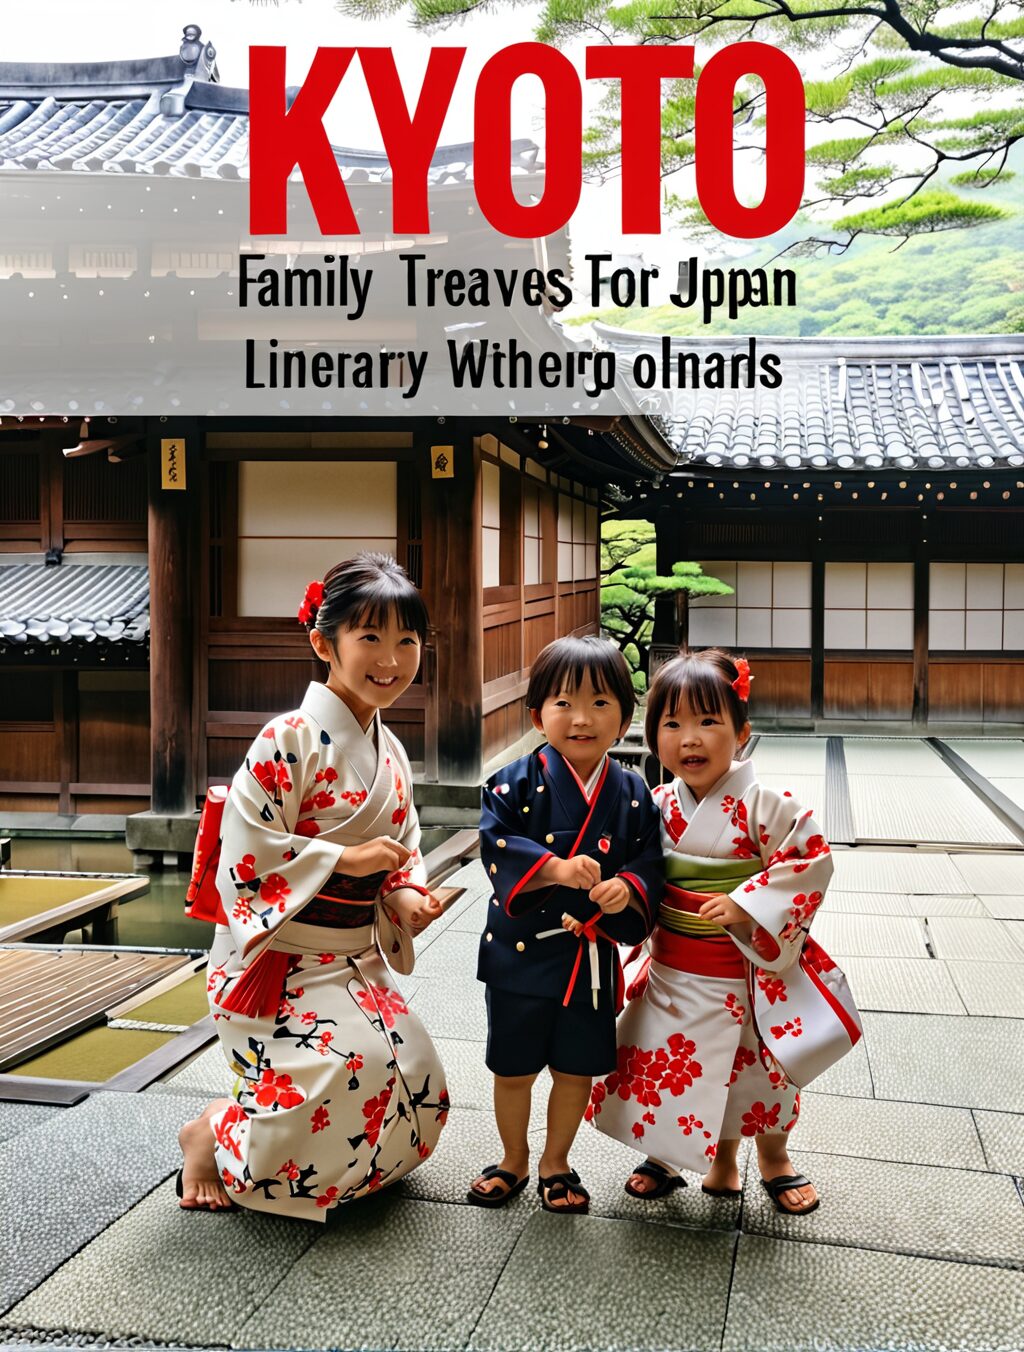 family travel itinerary japan